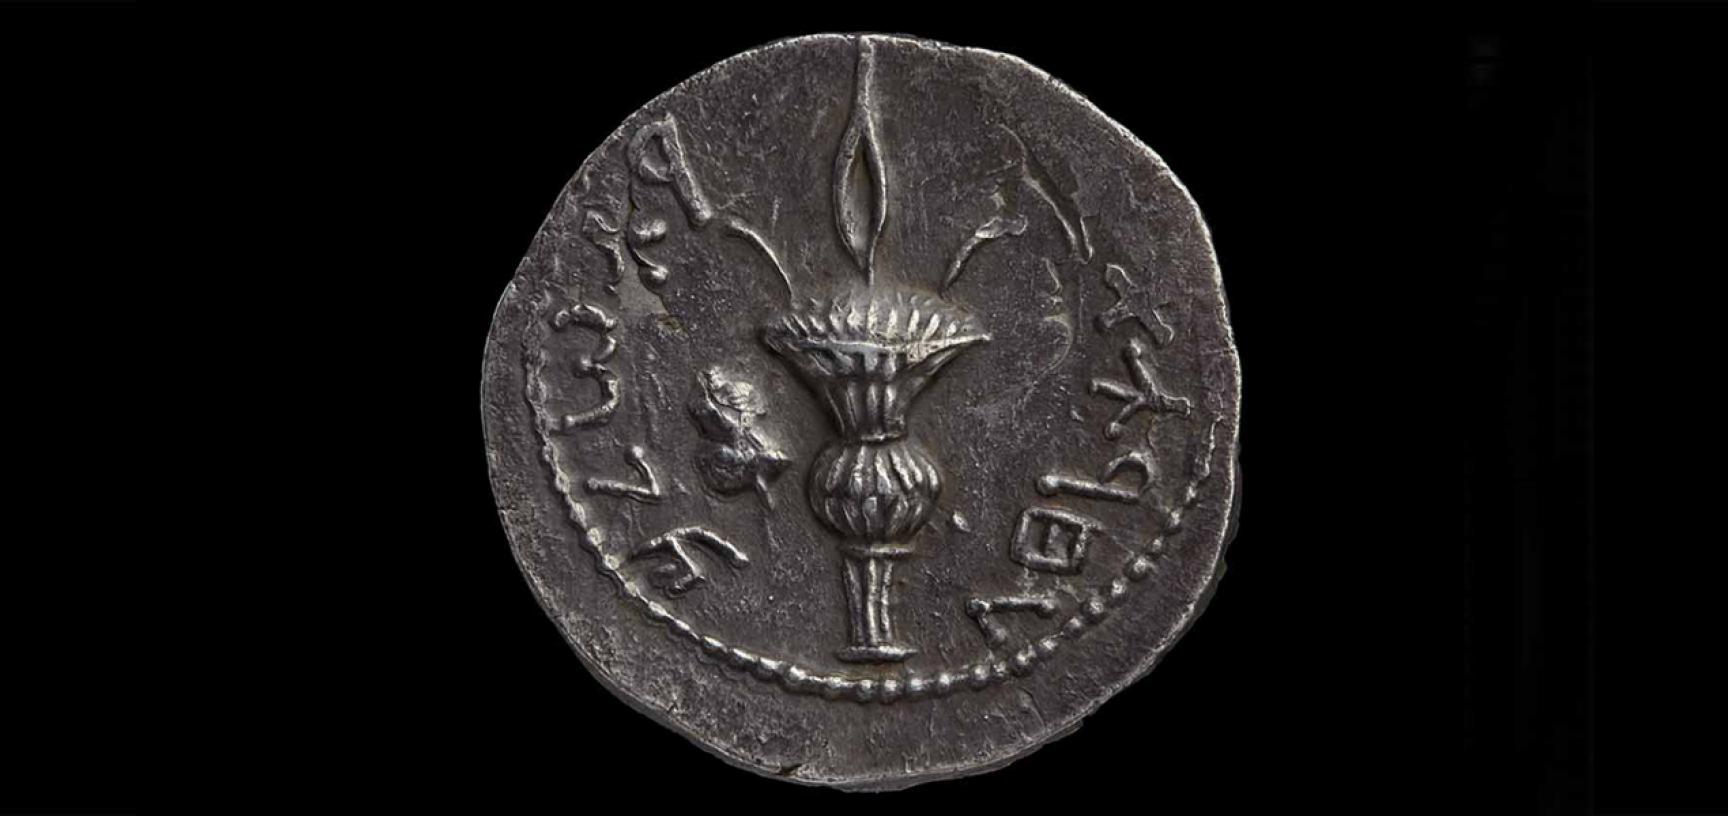 TRETRADRACHM, JUDEA (silver coin) from the Ashmolean collections